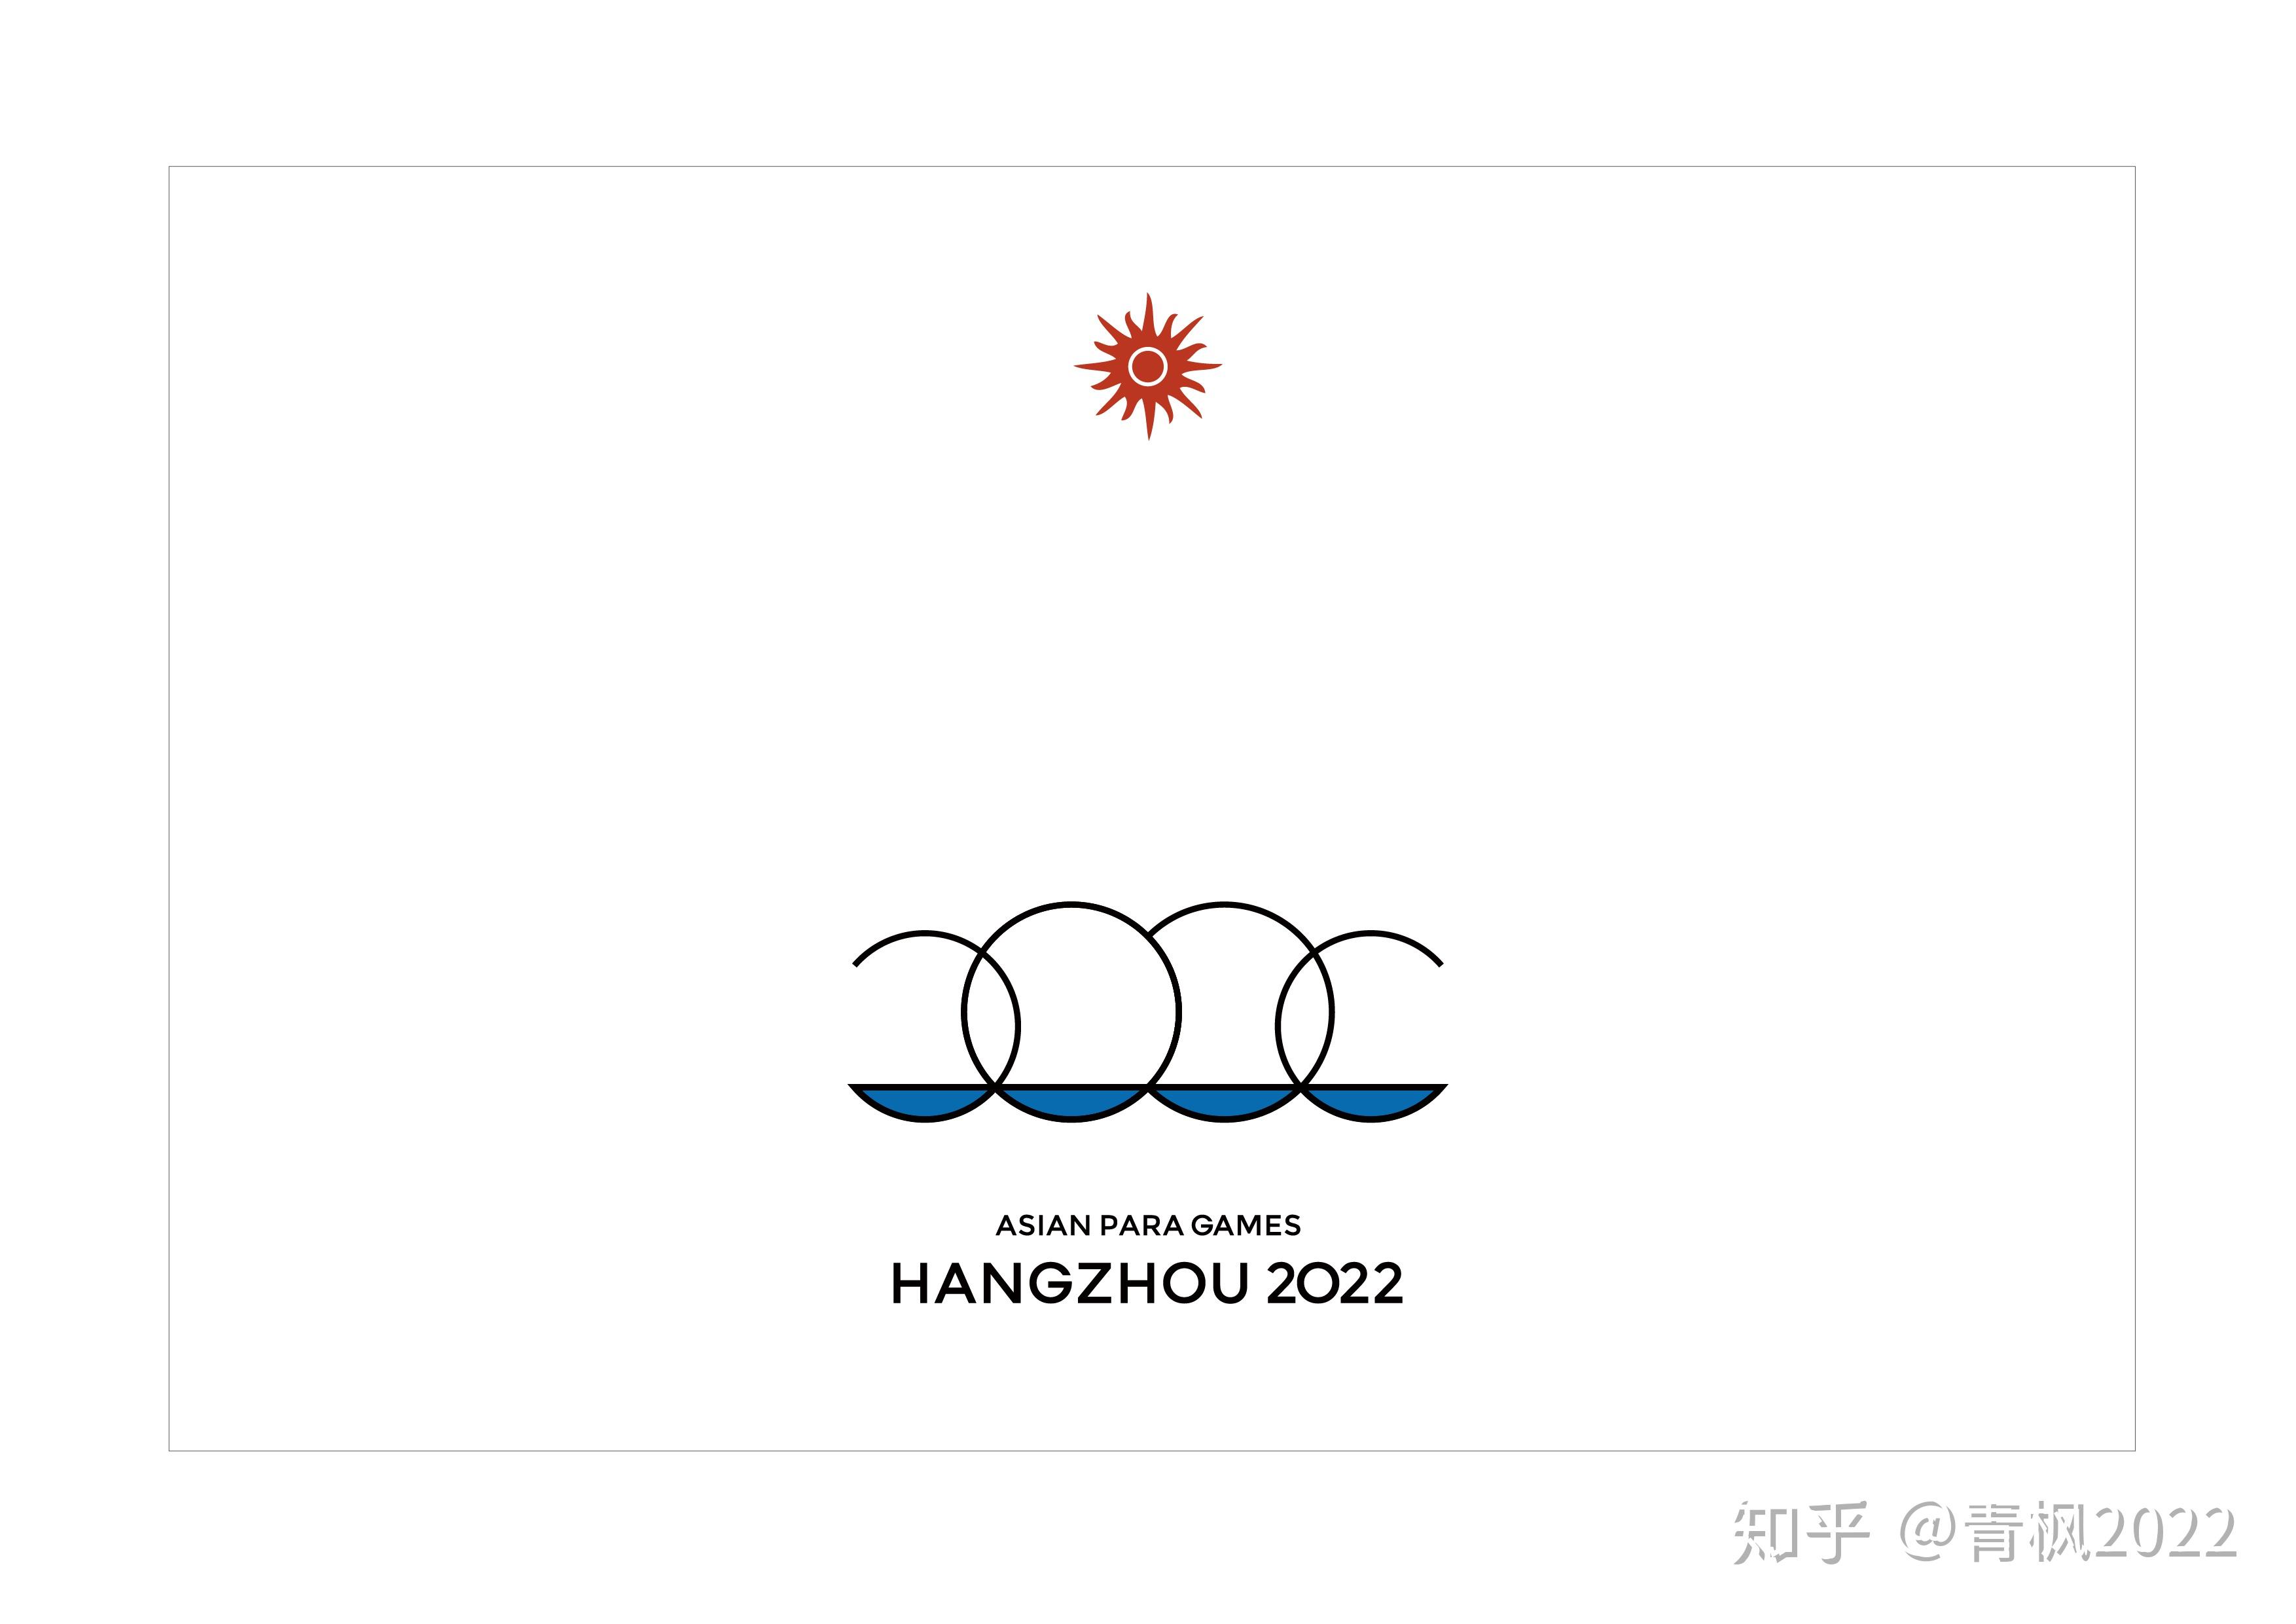 如何评价2022年杭州亚运会会徽